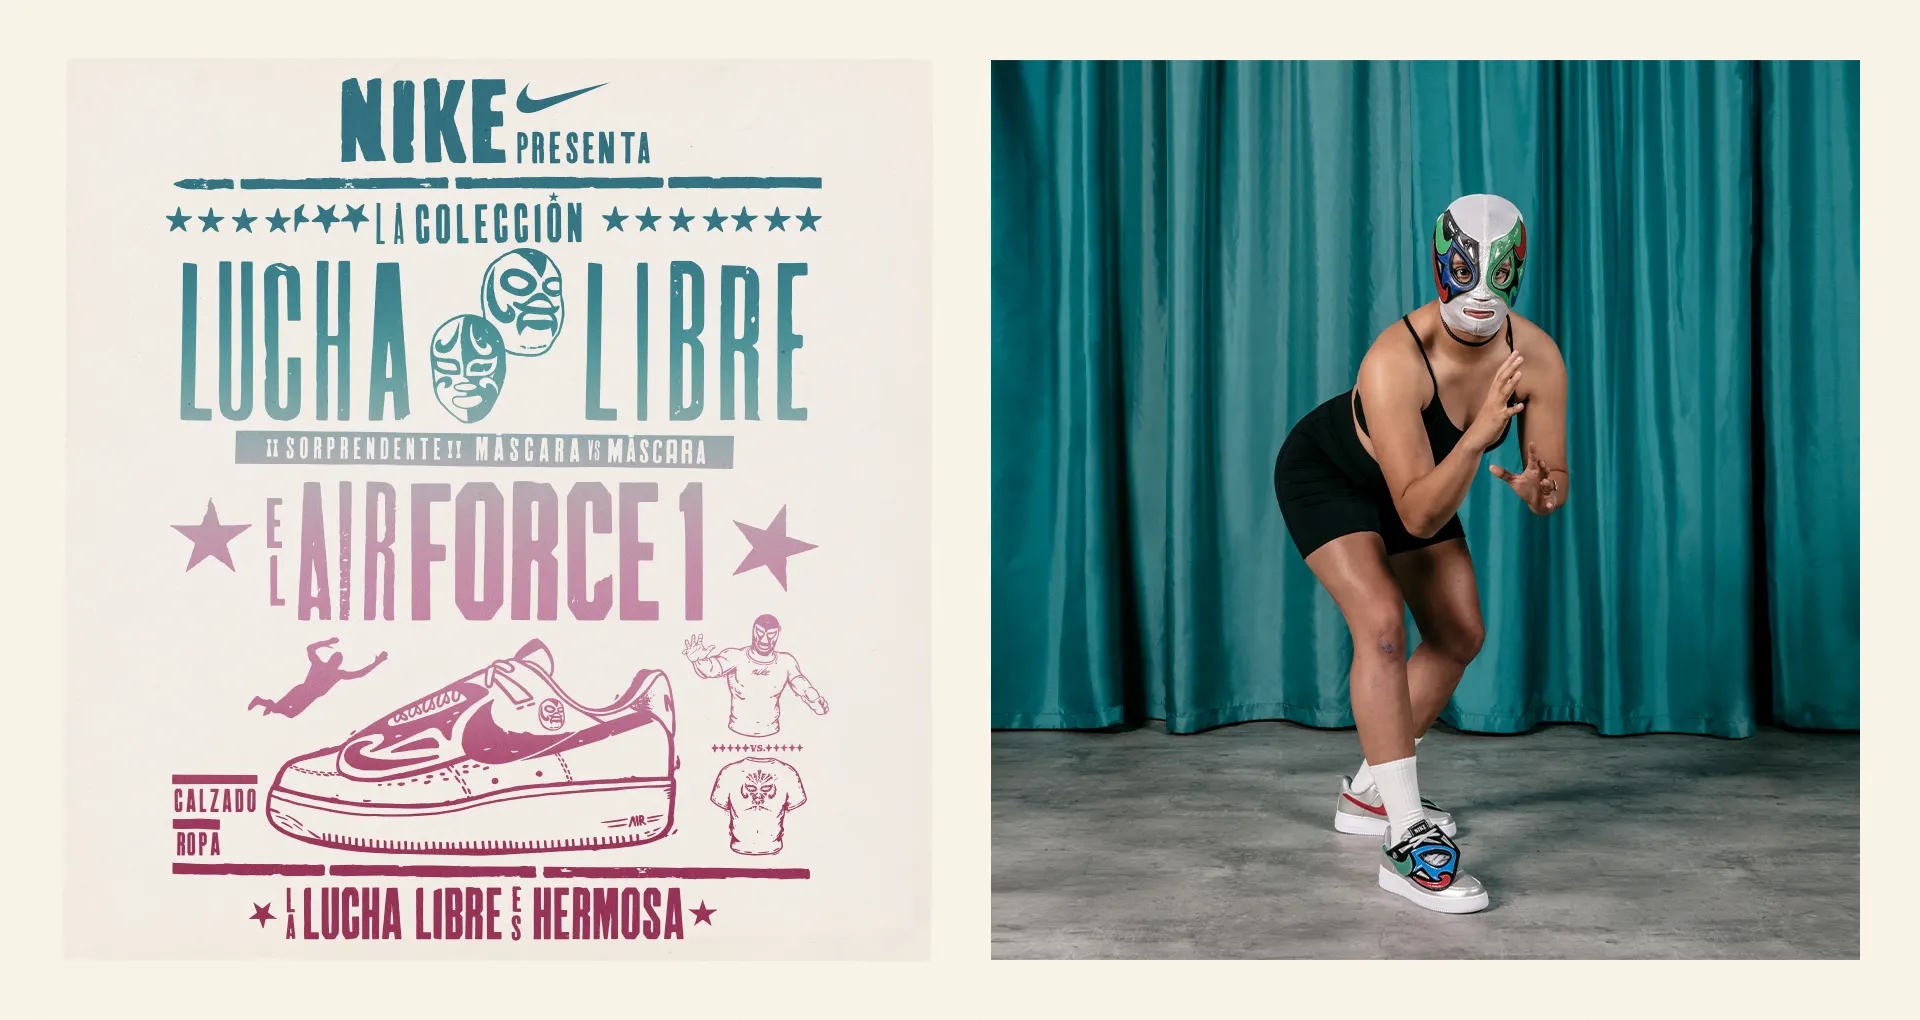 Nike lanza una colección ideal para los amantes de la lucha libre